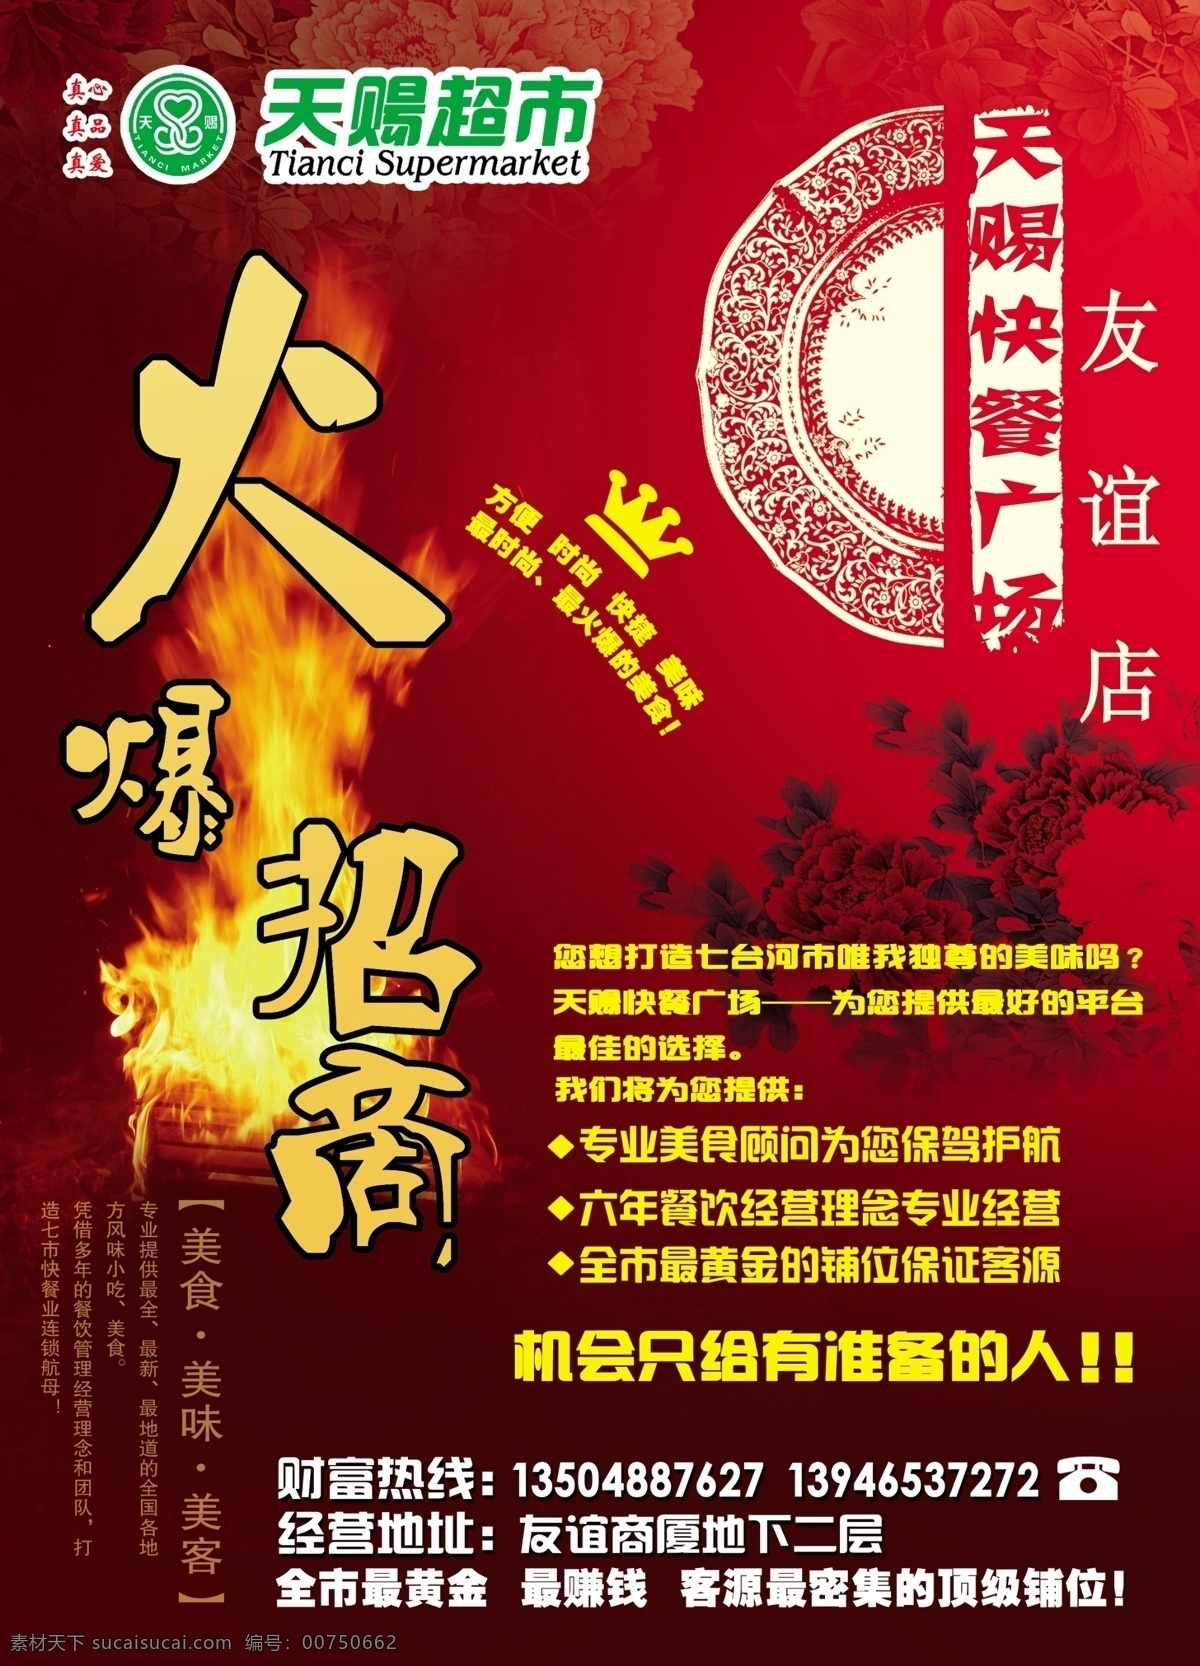 美食广场海报 招商 美食广场 海报 宣传单 红色 古典 中国风 牡丹 广告设计模板 源文件